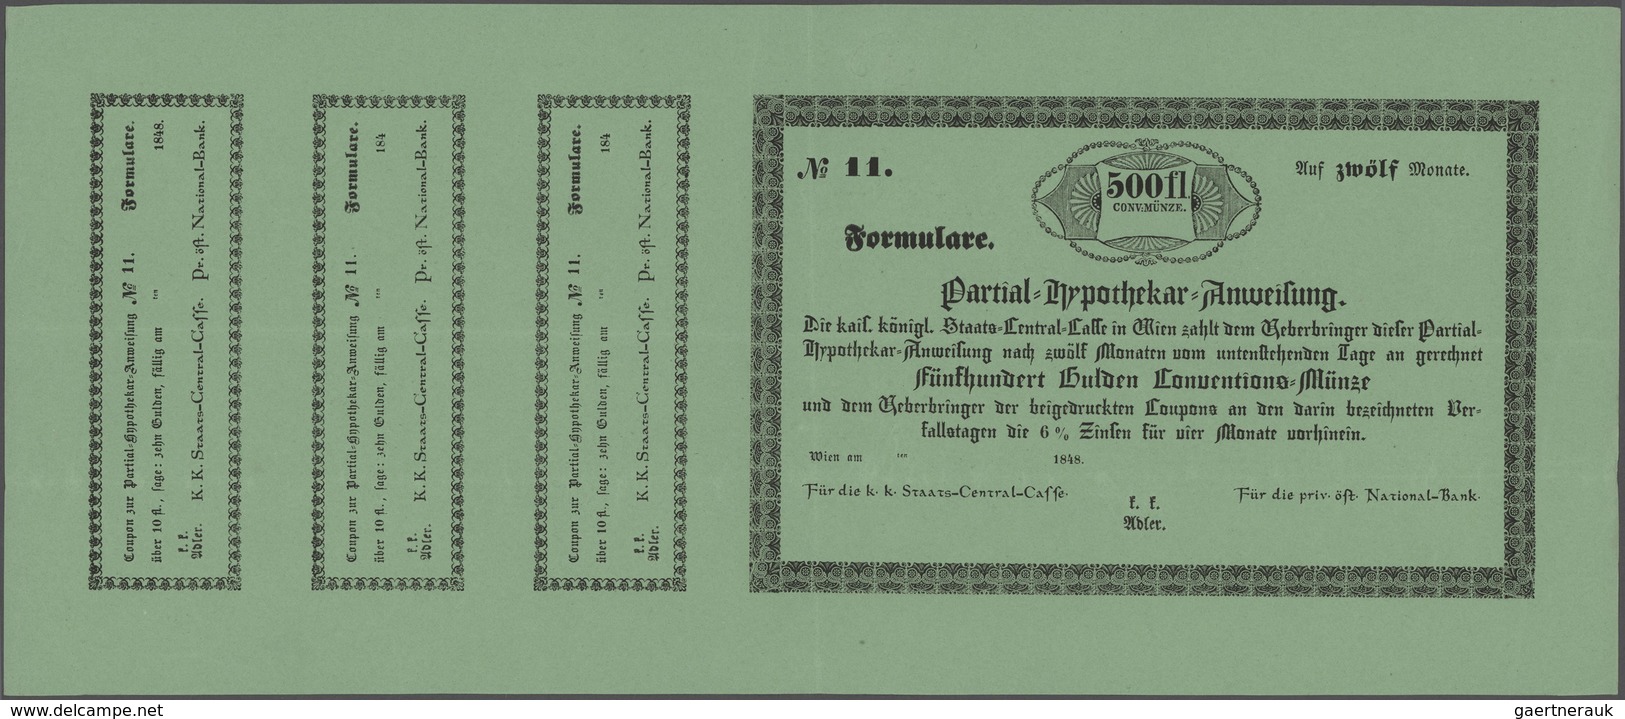 Austria / Österreich: Partial-Hypothekar-Anweisung, 500 Gulden 1848 Formular With 3 Cupons Of 10 Gul - Oesterreich